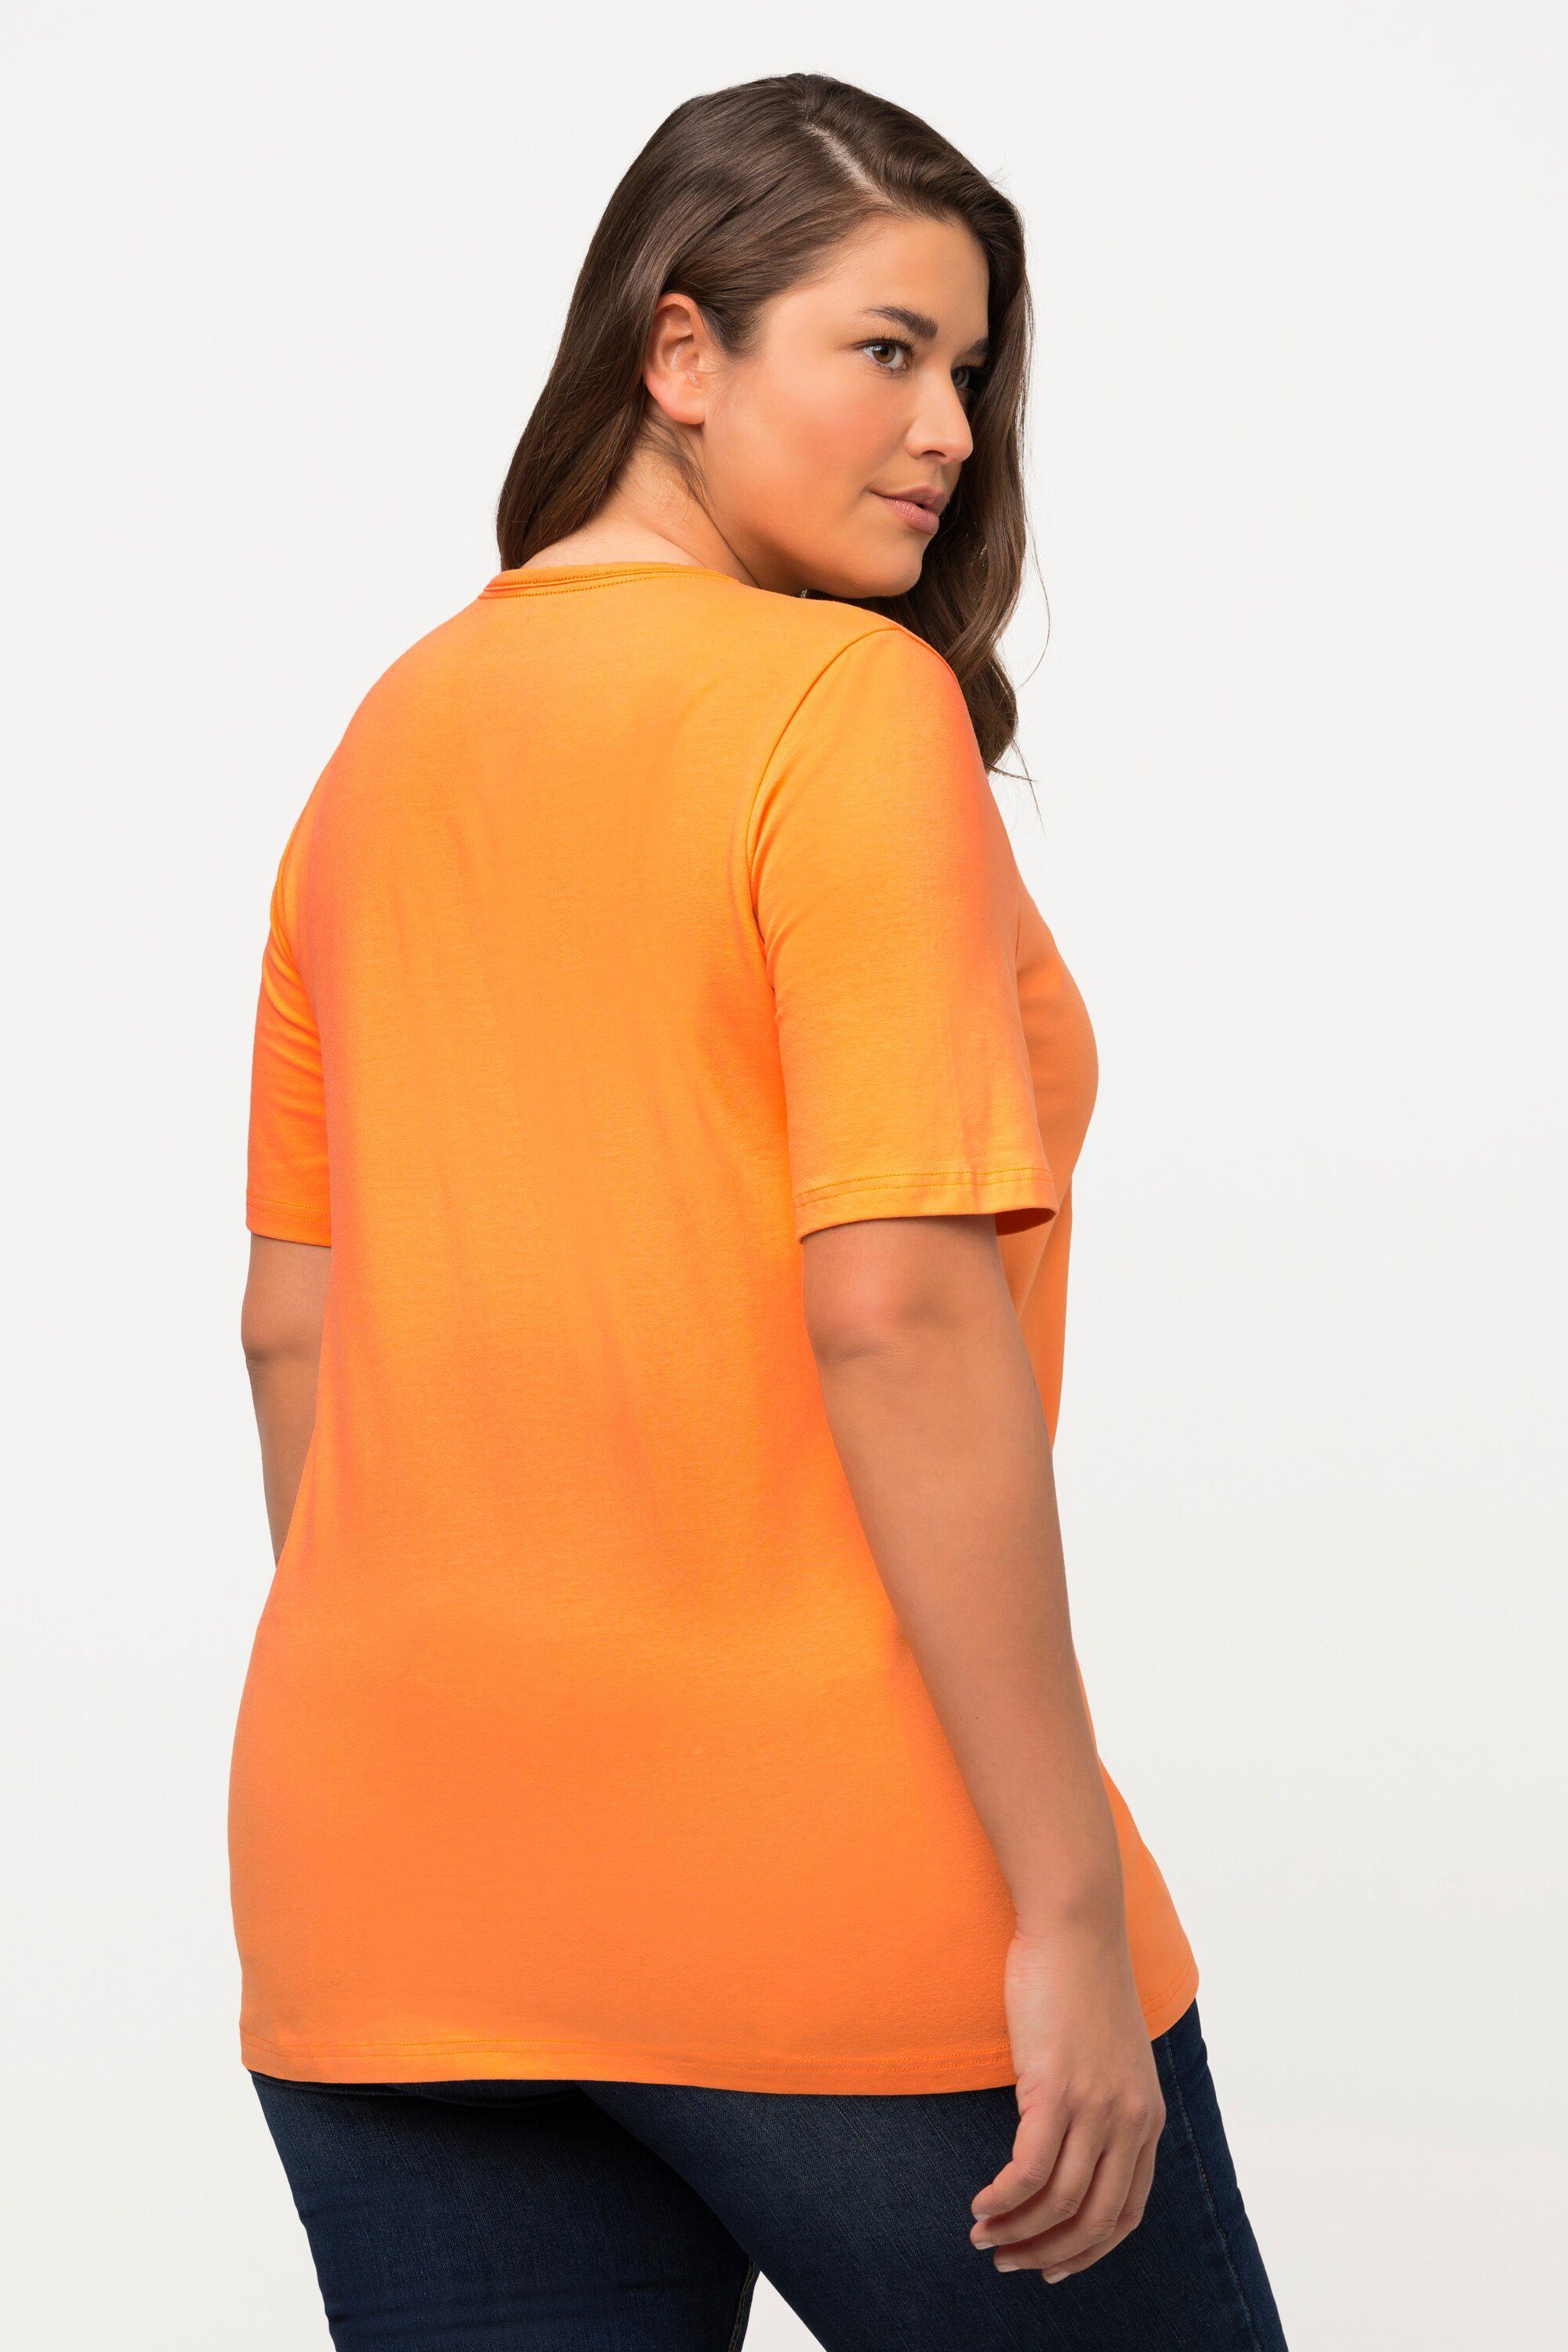 A-Linie Halbarm cantaloupe Rundhalsshirt Carree-Ausschnitt T-Shirt orange Popken Ulla